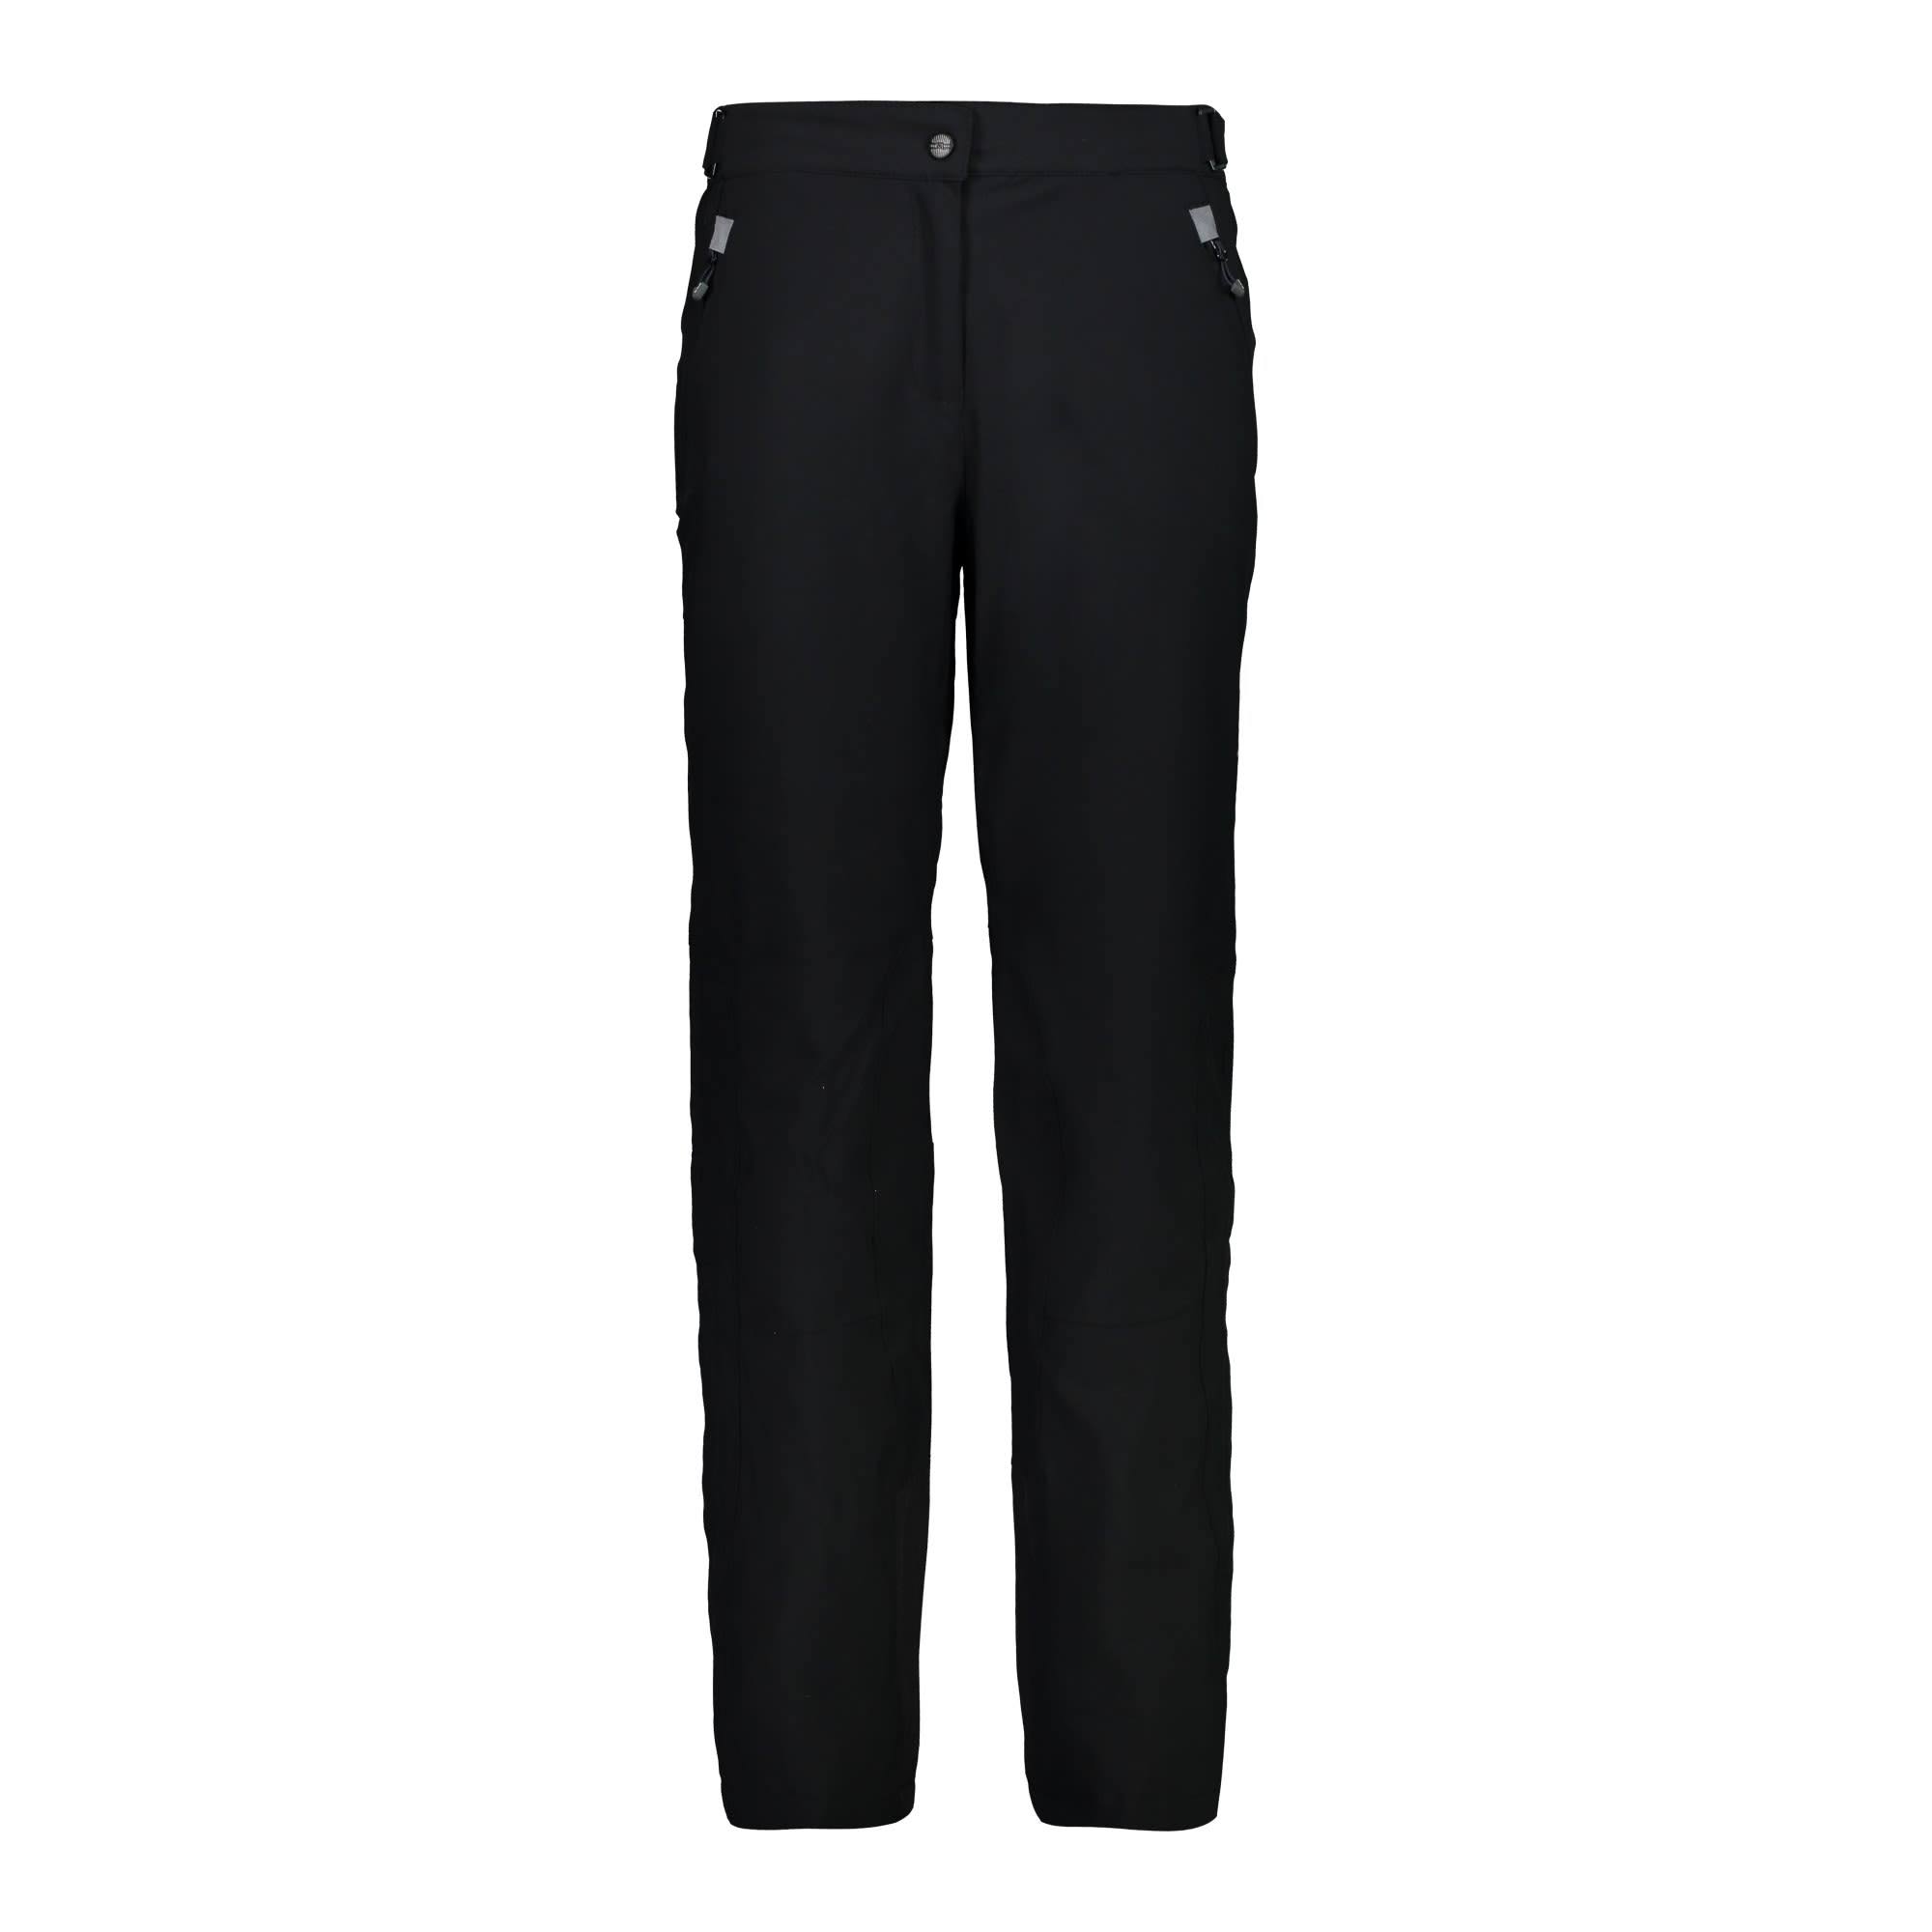 CMP Women's Stretch Ski Pants - Black, Size 42